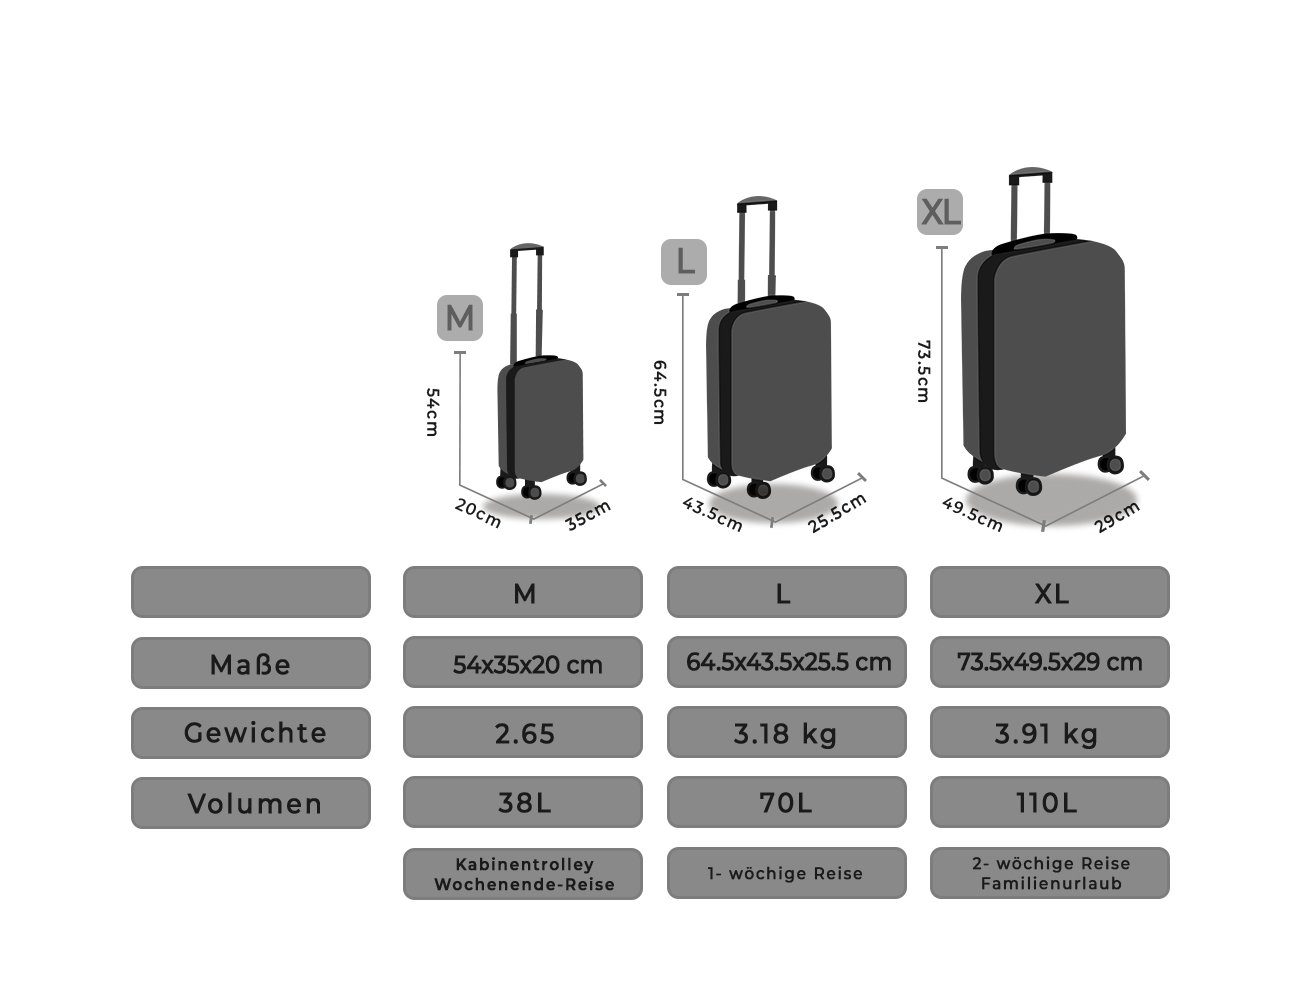 Konform 100% Ginevra Gray Move IATA ABS, Easy Silver 55,Reisekoffer Doppelrollen, Hartschalen-Koffer,360° Hartschalen-Trolley